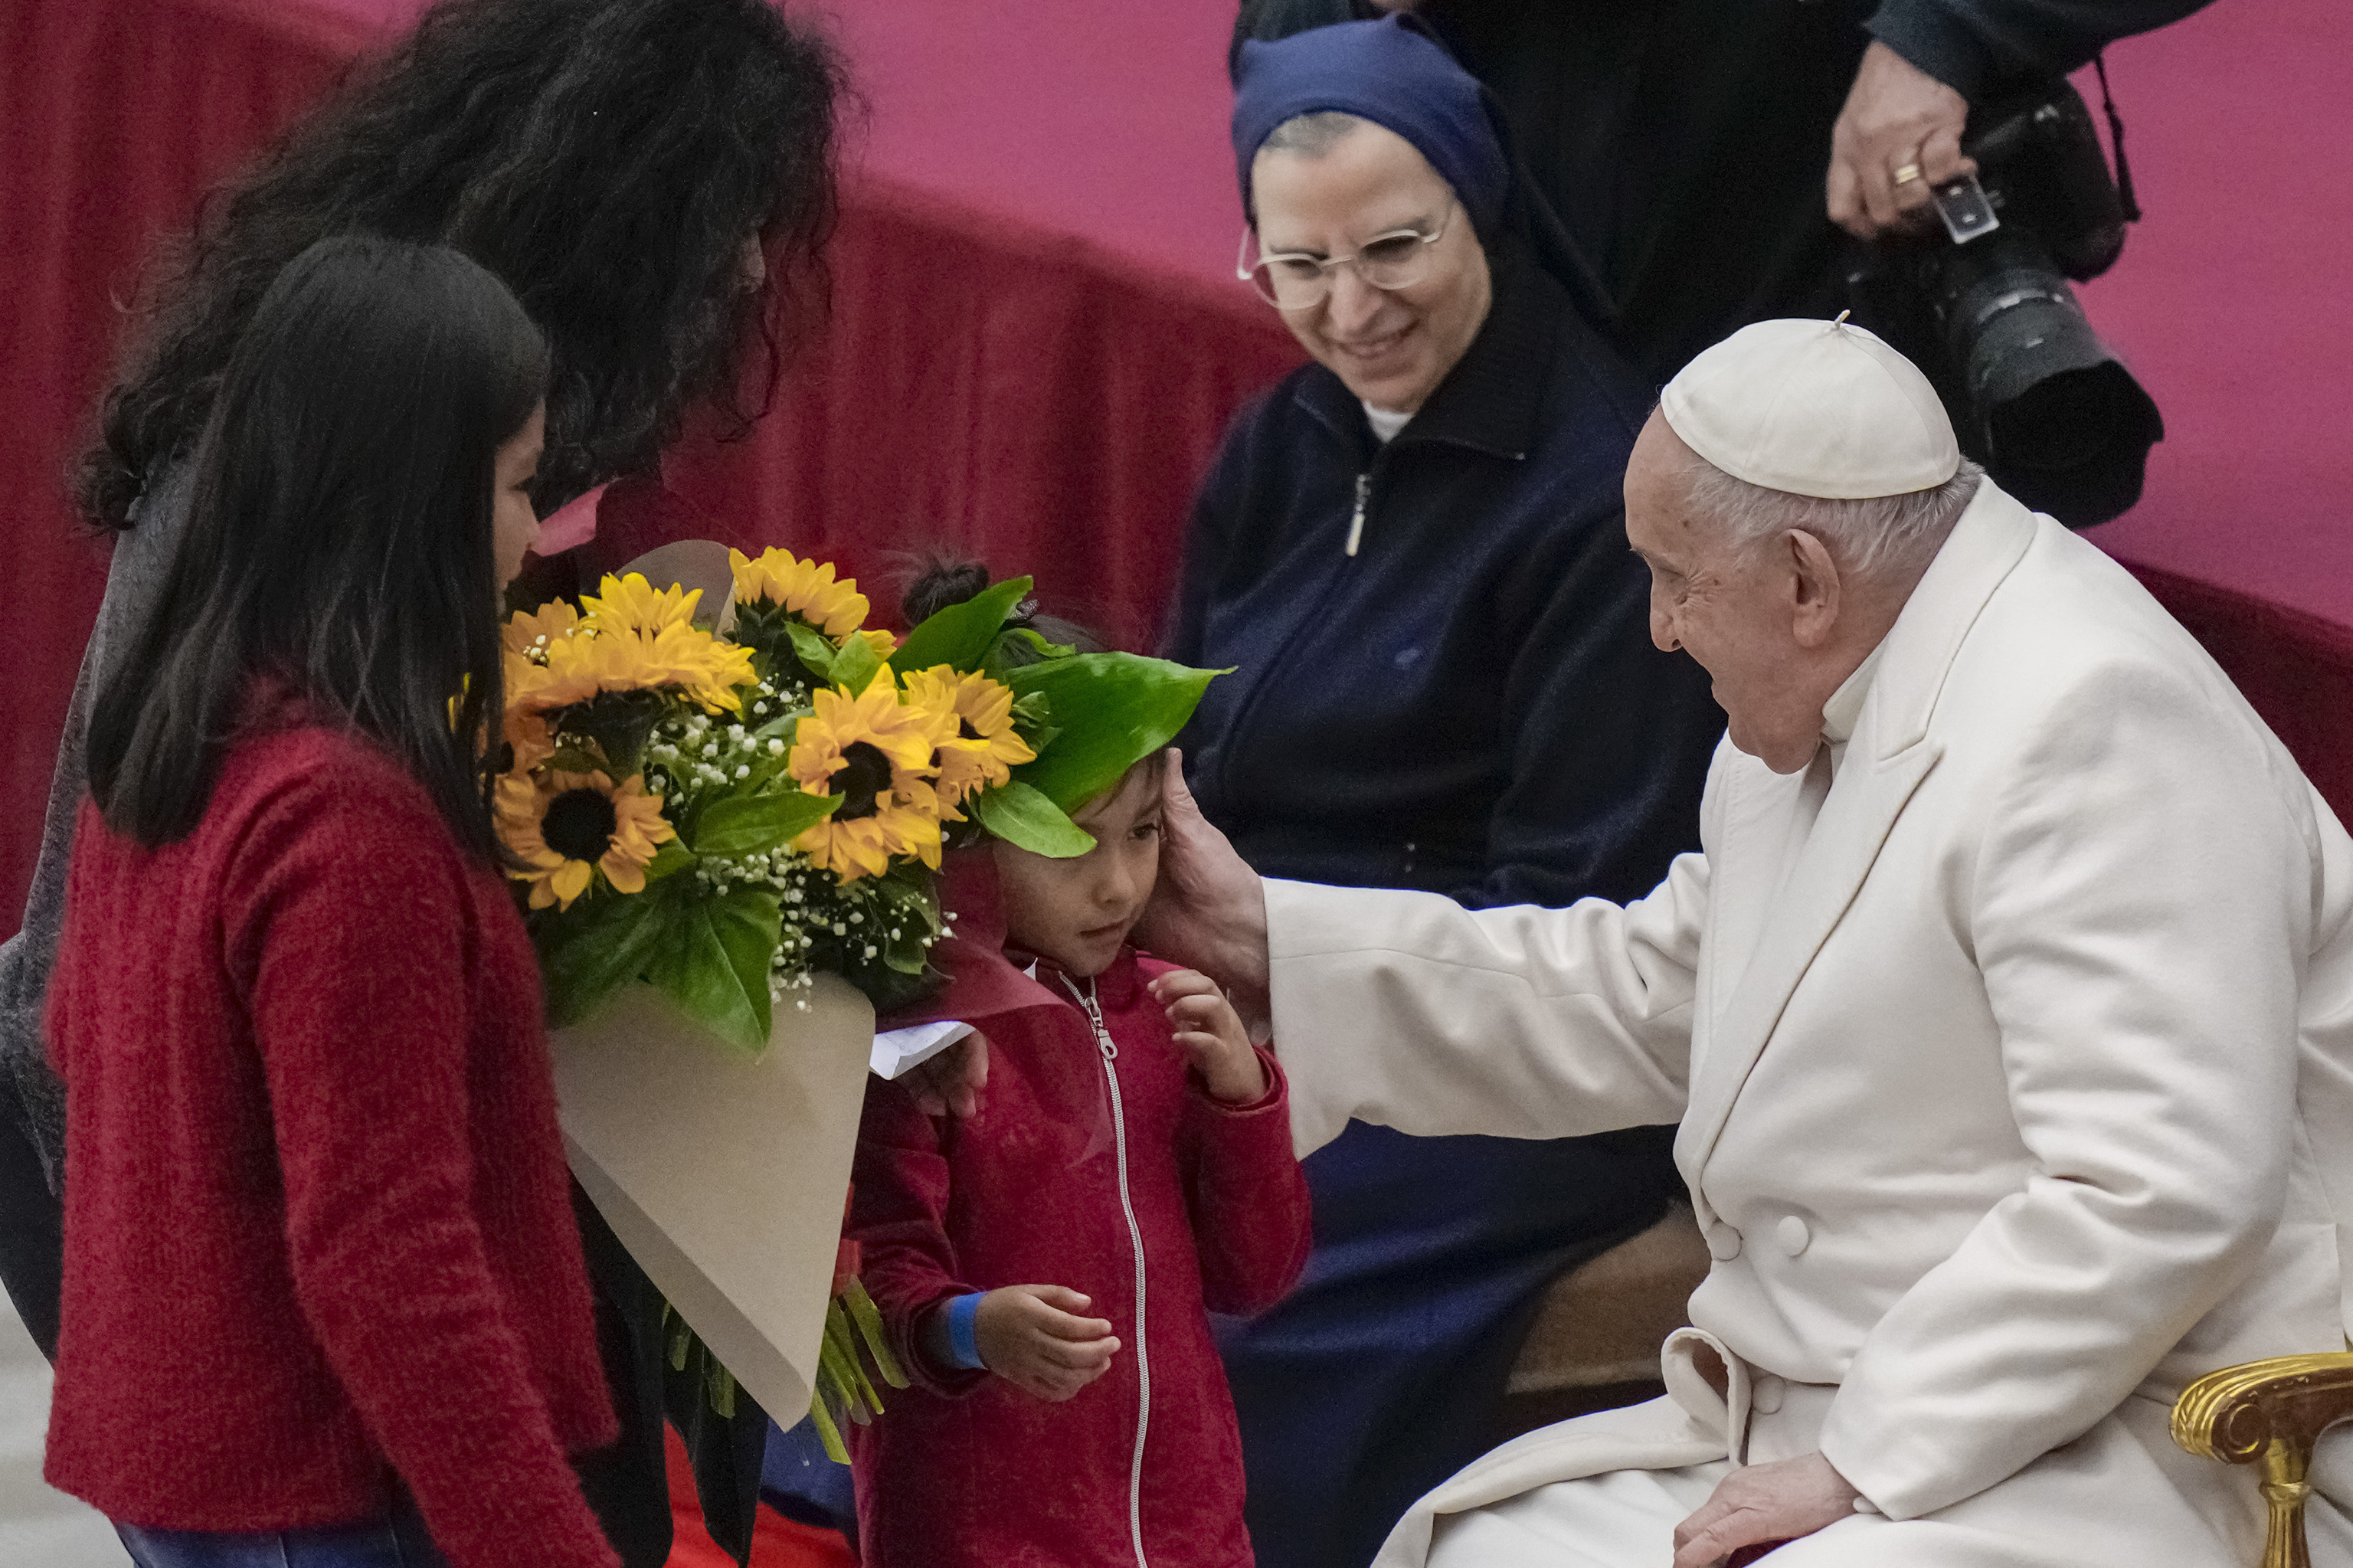 El papa Francisco celebra su cumpleaos en el Vaticano, este domingo.